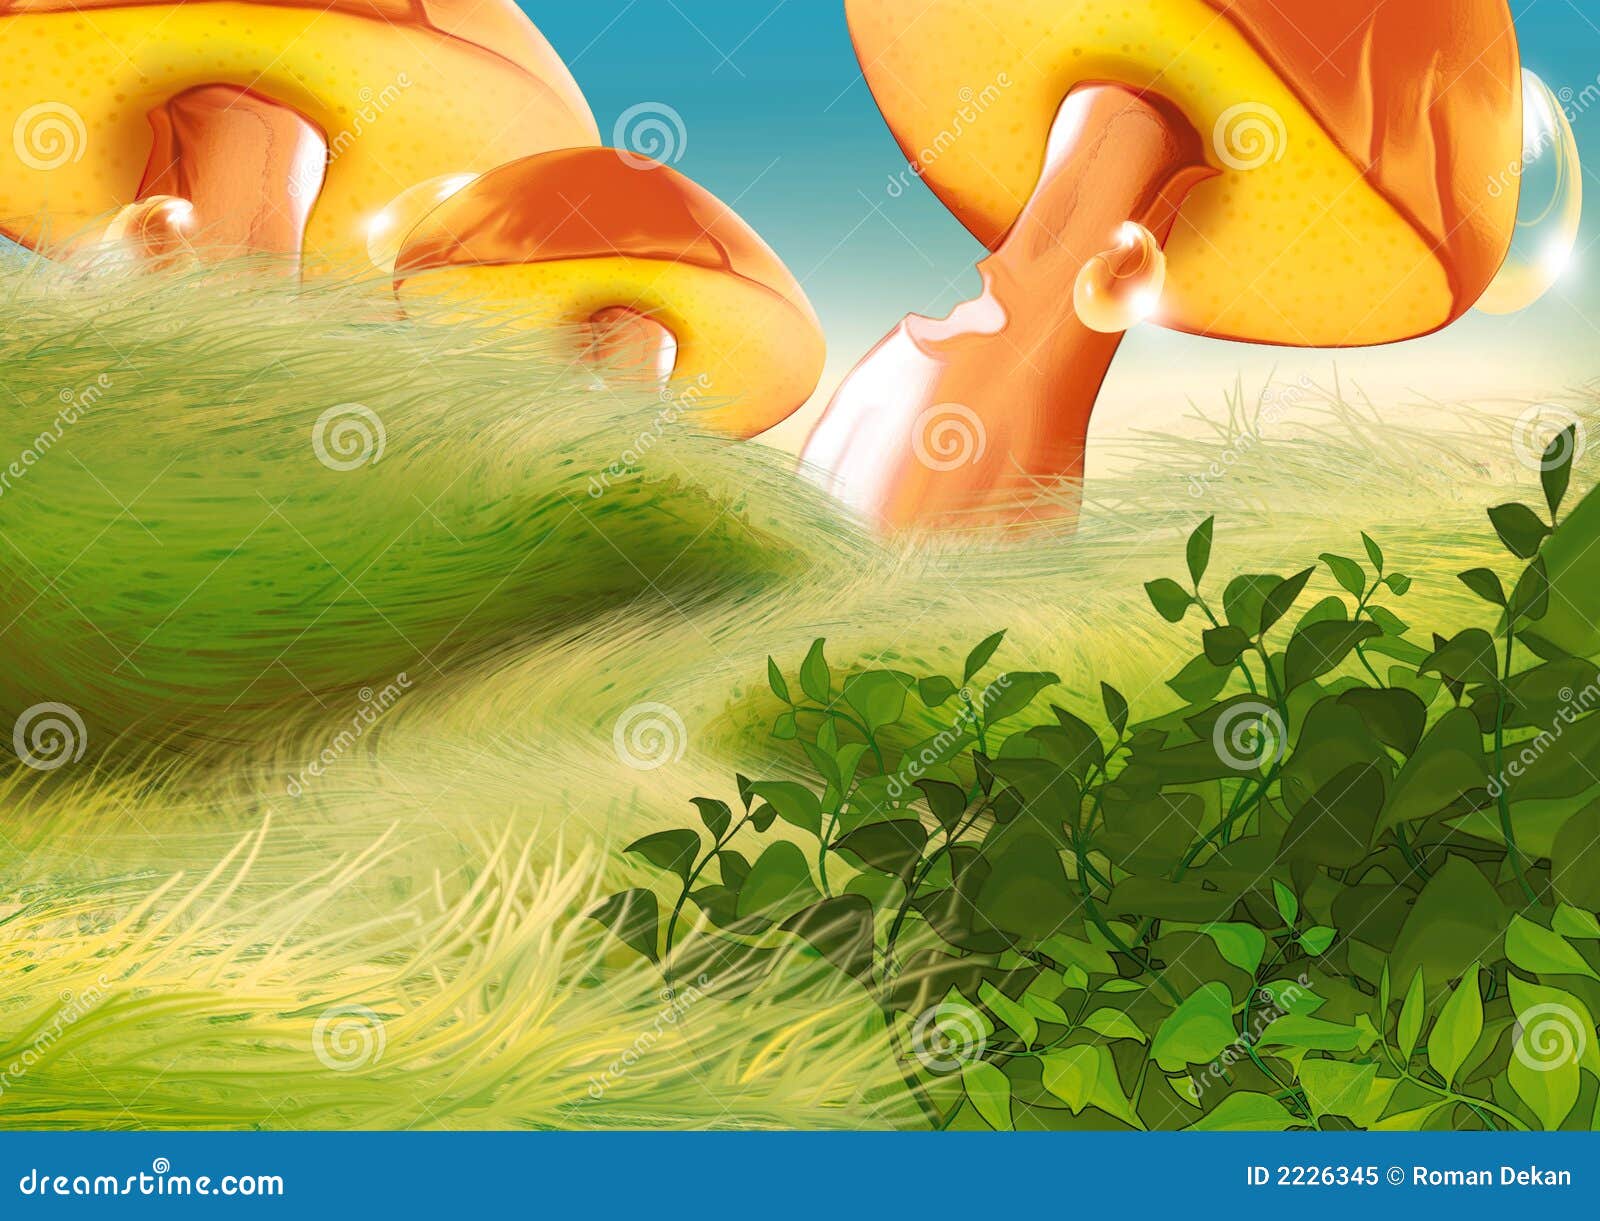 美丽的蘑菇童话小屋素材图片下载-素材编号09530466-素材天下图库